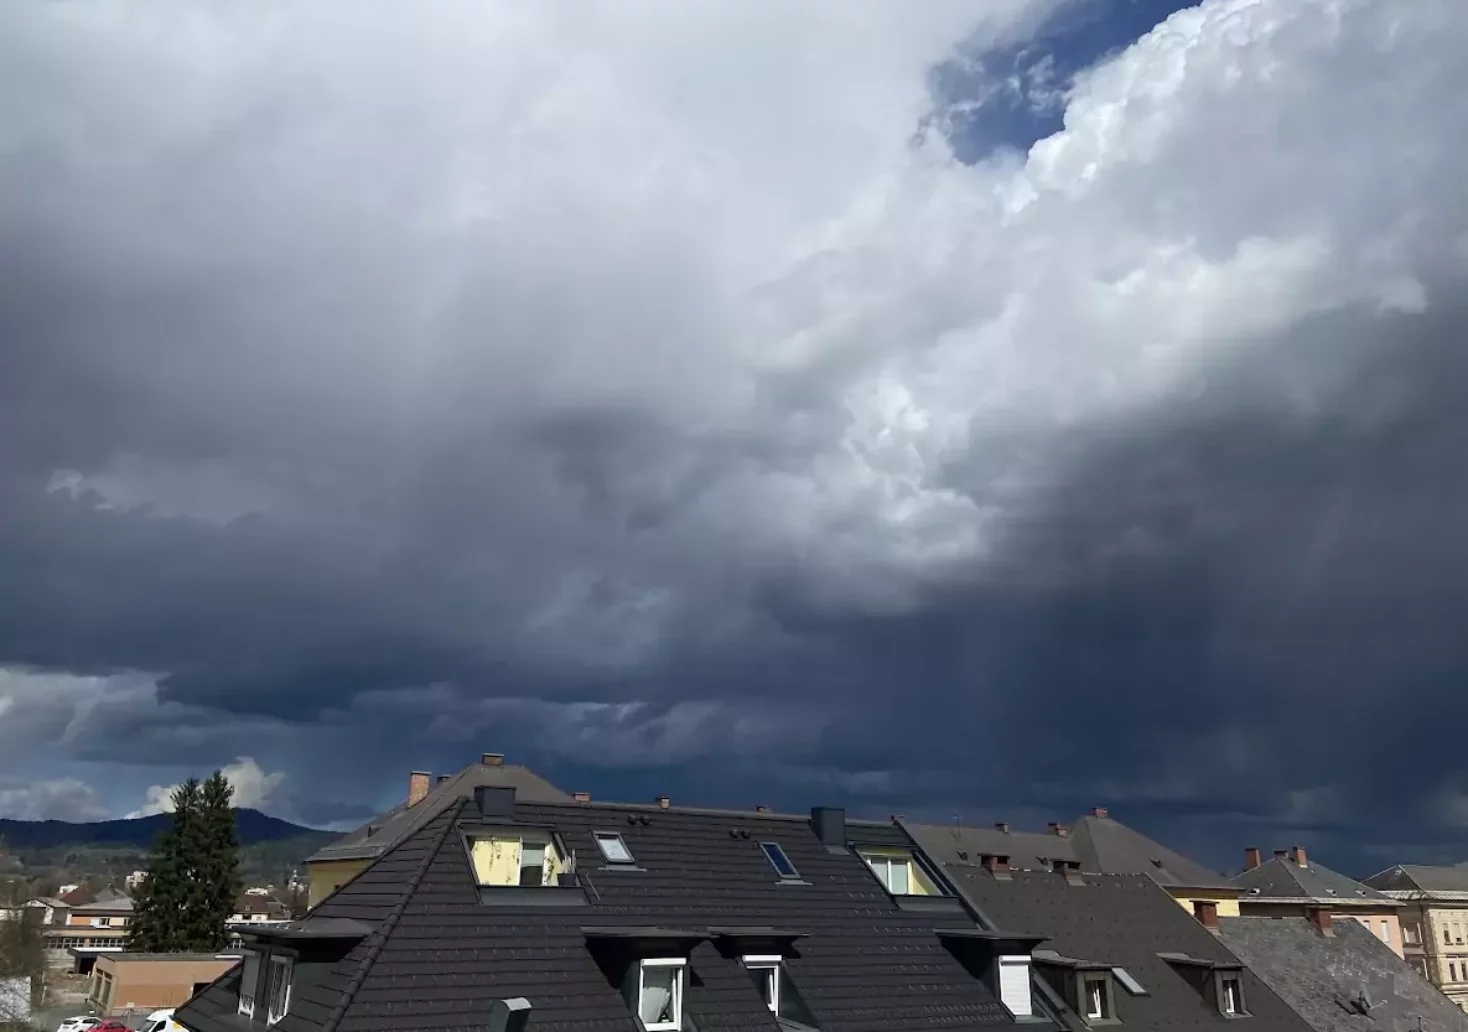 Bild auf 5min.at zeigen Regenwolken in Klagenfurt.